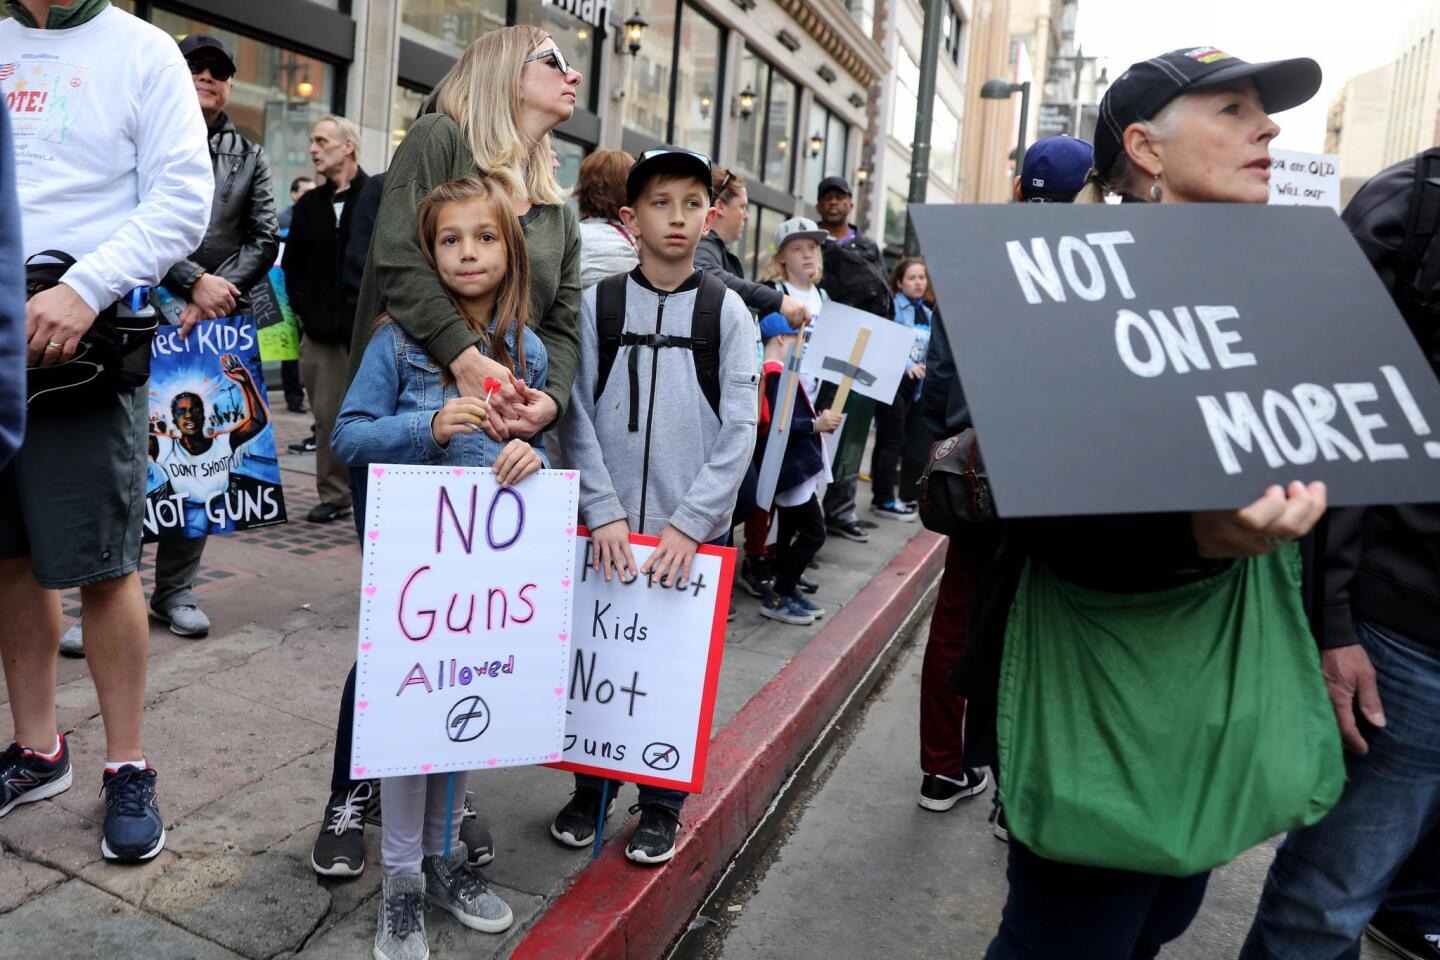 Muchos niños, junto a sus padres, acudieron a las manifestaciones. El suceso desató una movilización nacional para exigir mayores controles en el uso y venta de armas.